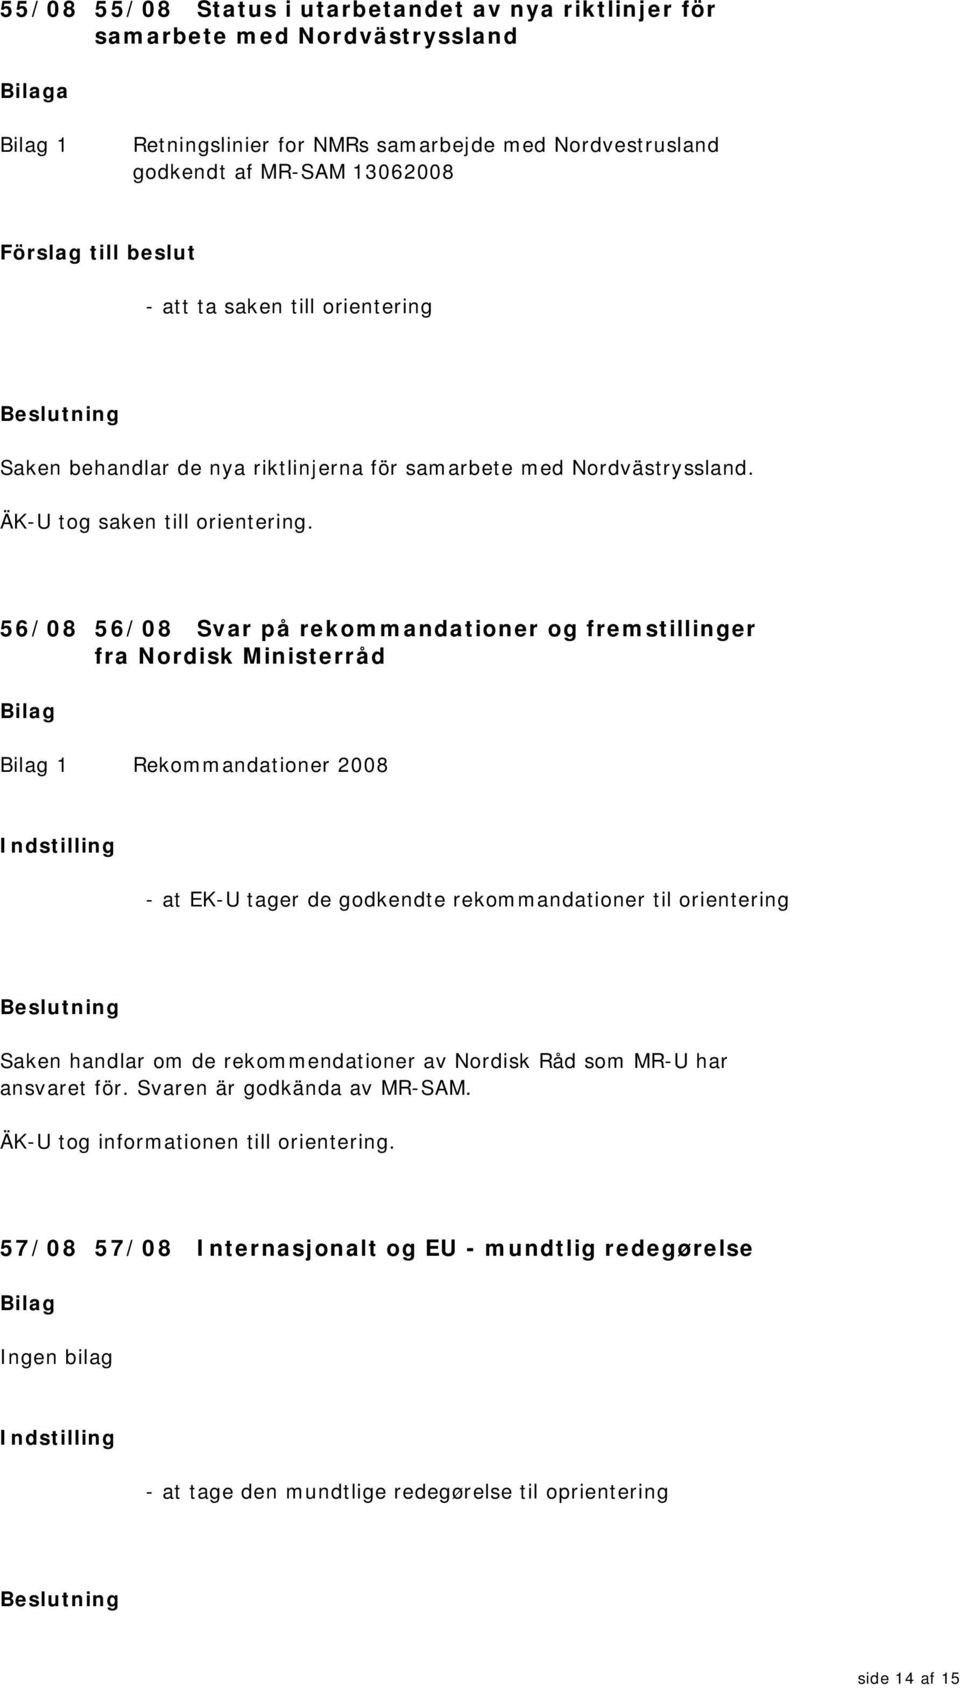 56/08 56/08 Svar på rekommandationer og fremstillinger fra Nordisk Ministerråd 1 Rekommandationer 2008 - at EK-U tager de godkendte rekommandationer til orientering Saken handlar om de